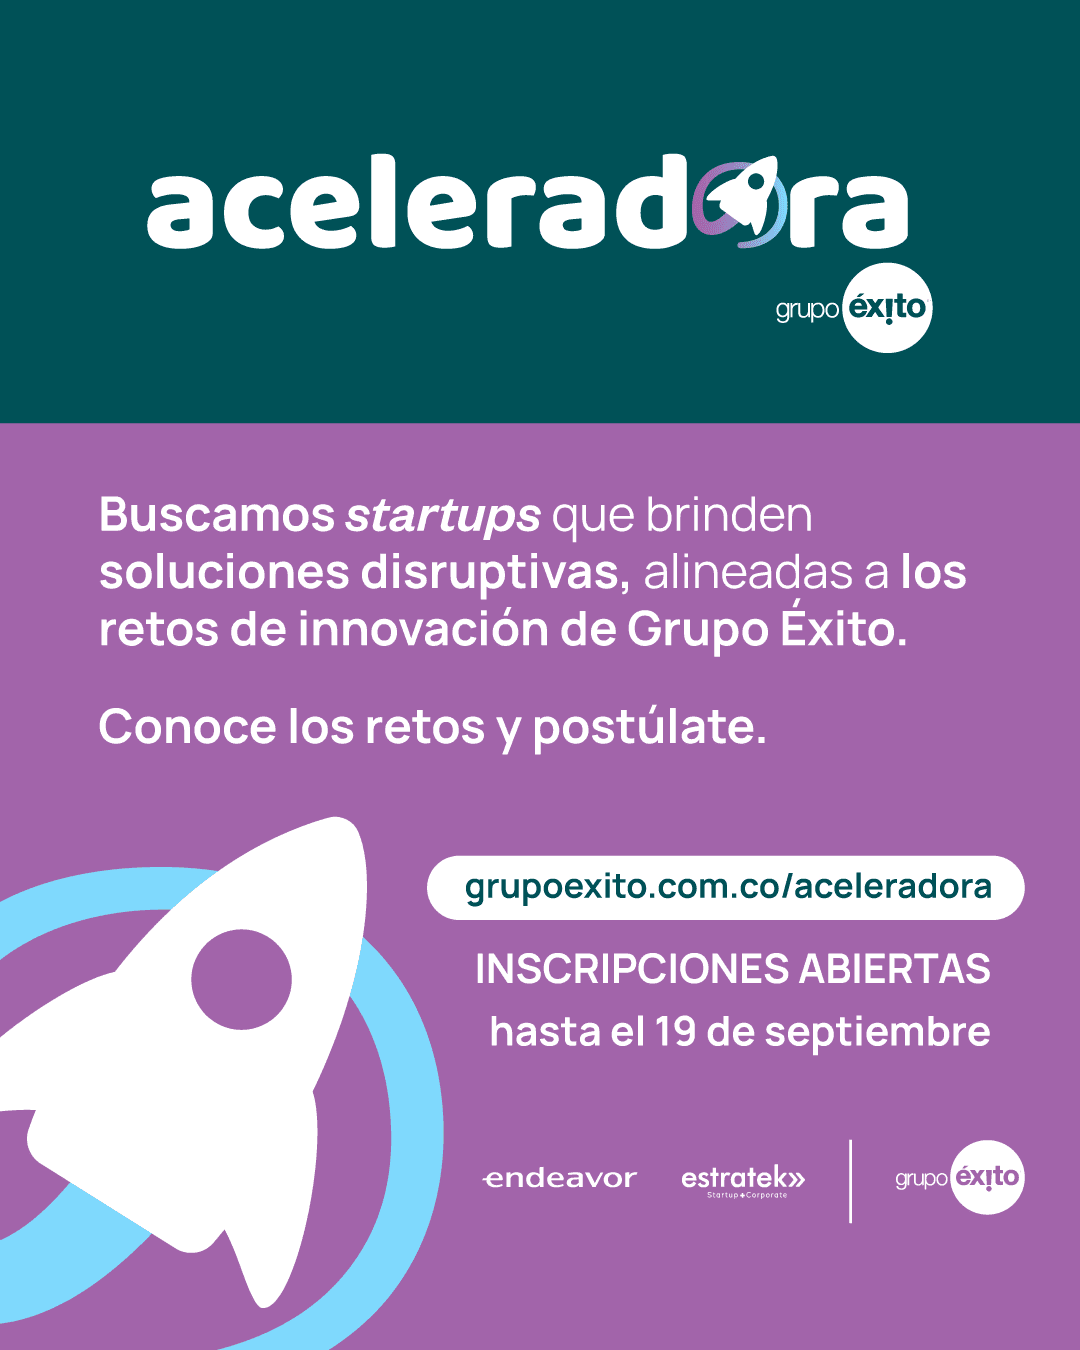 Grupo Éxito busca startups disruptivas a nivel nacional e internacional